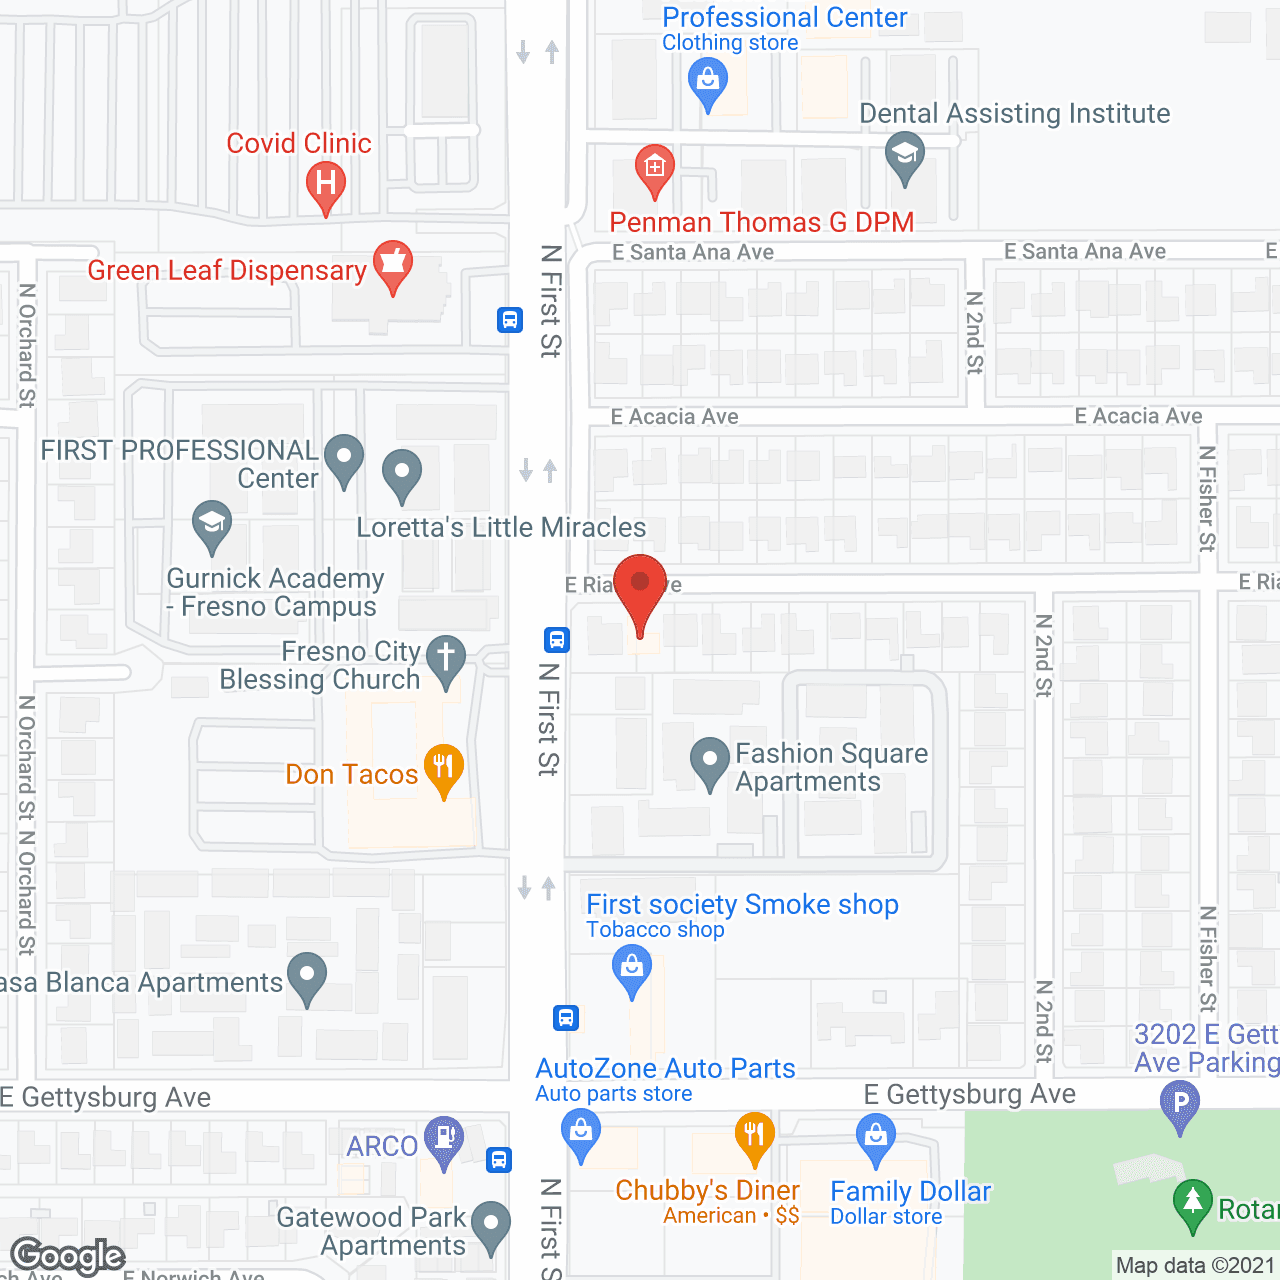 Casa San Dimas in google map